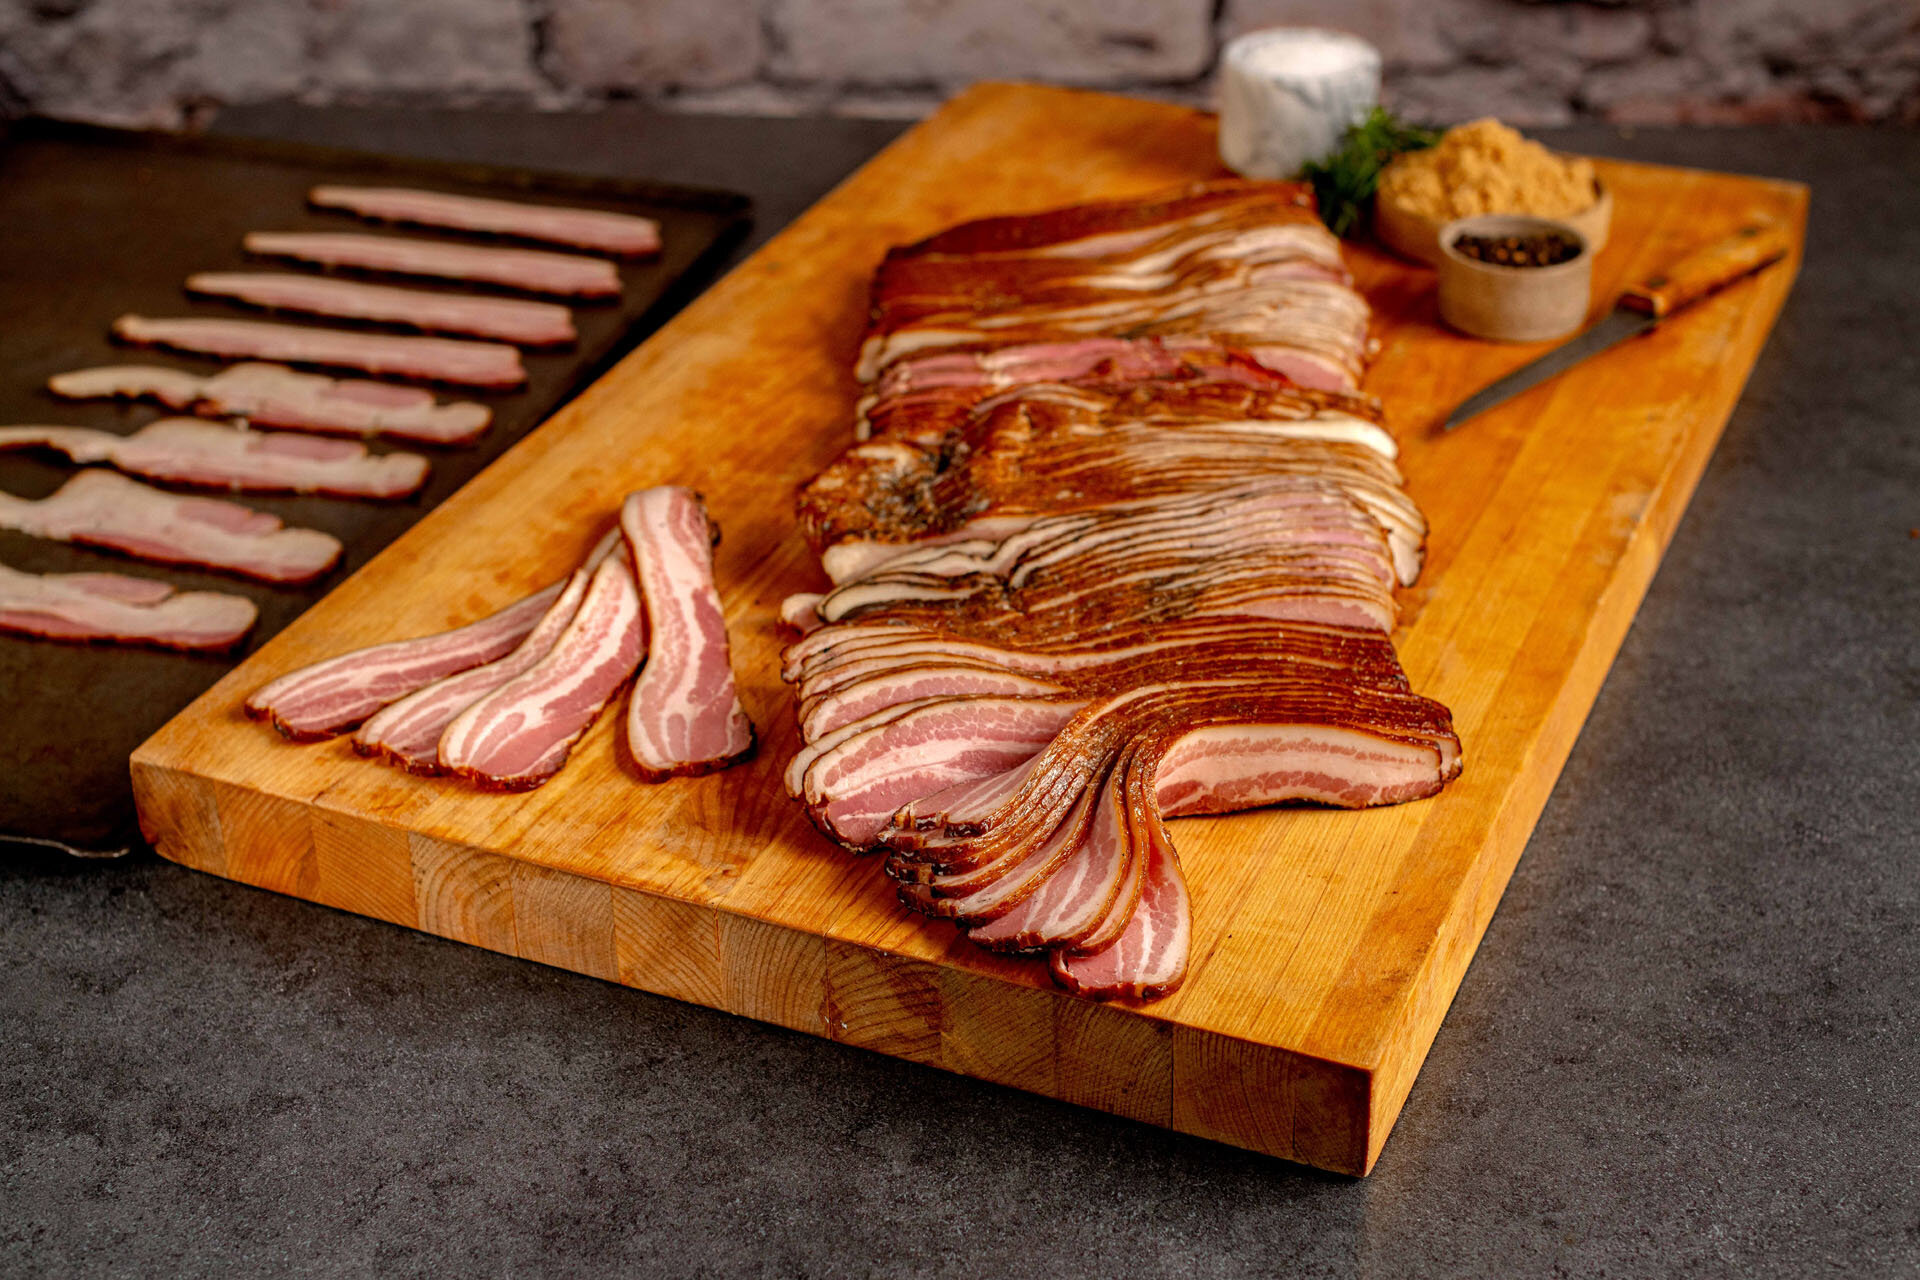 10 lb Sliced Bacon 03.jpg